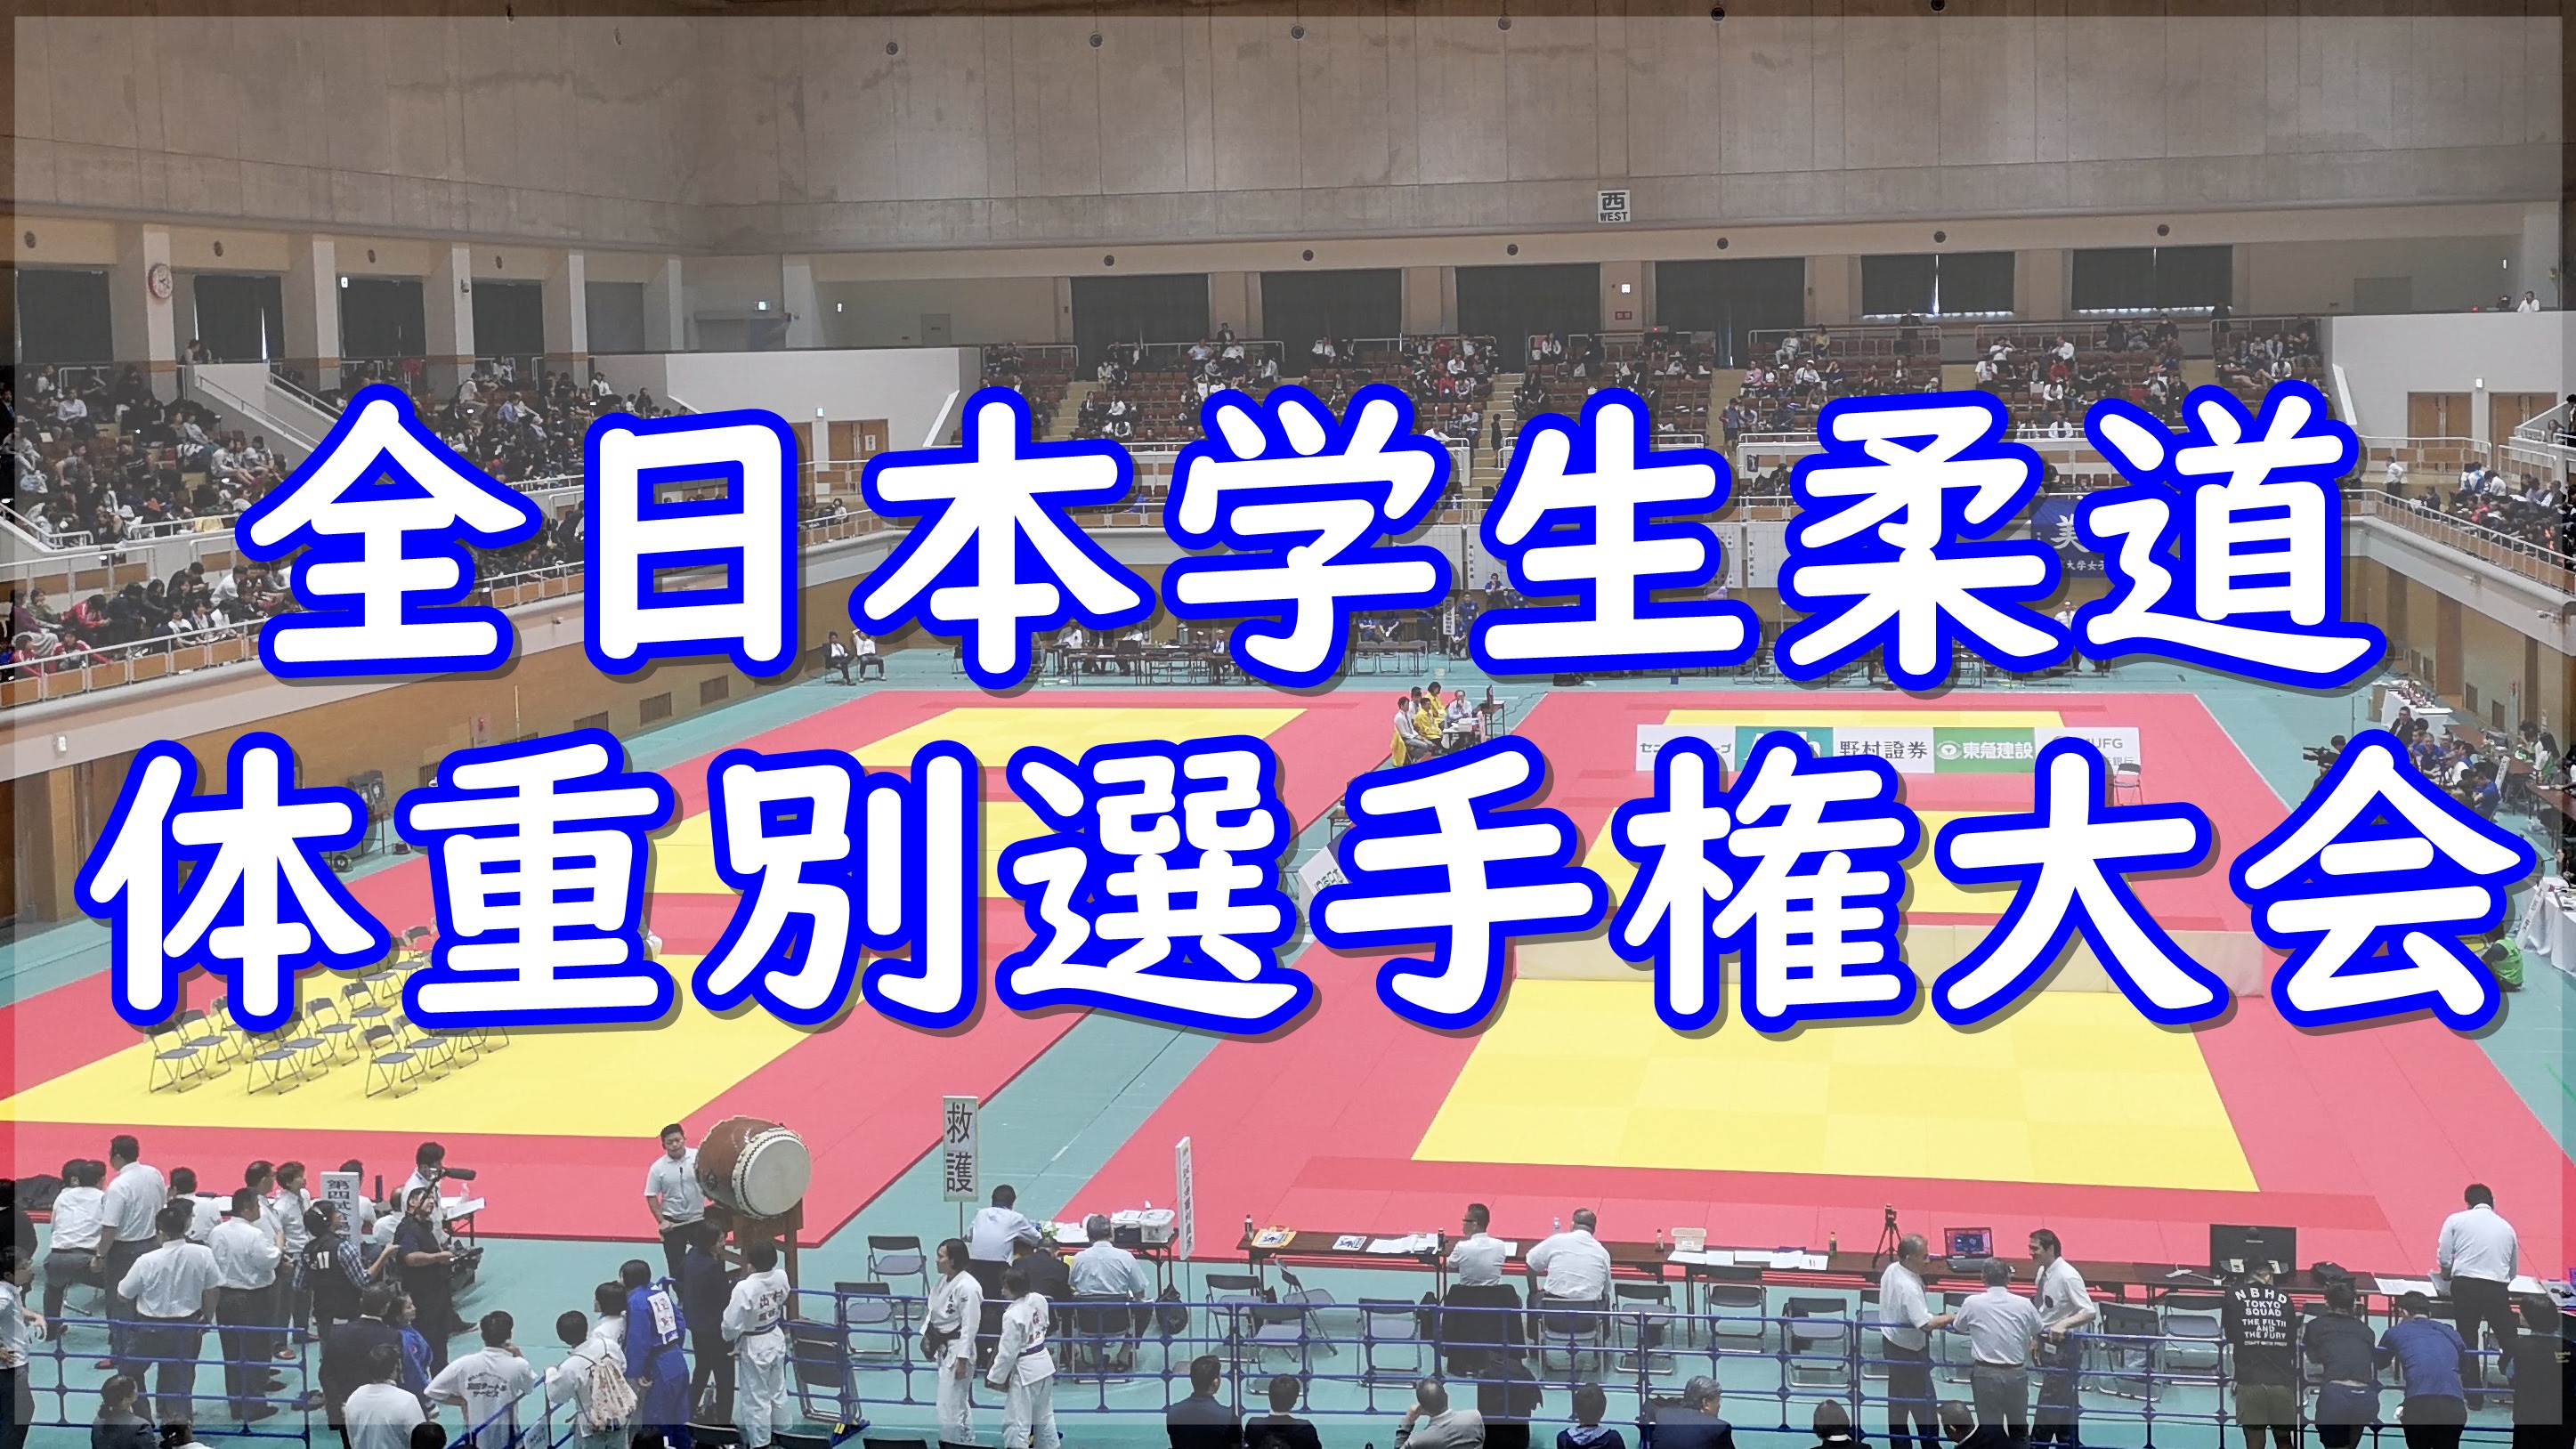 全日本学生柔道体重別選手権大会 2019